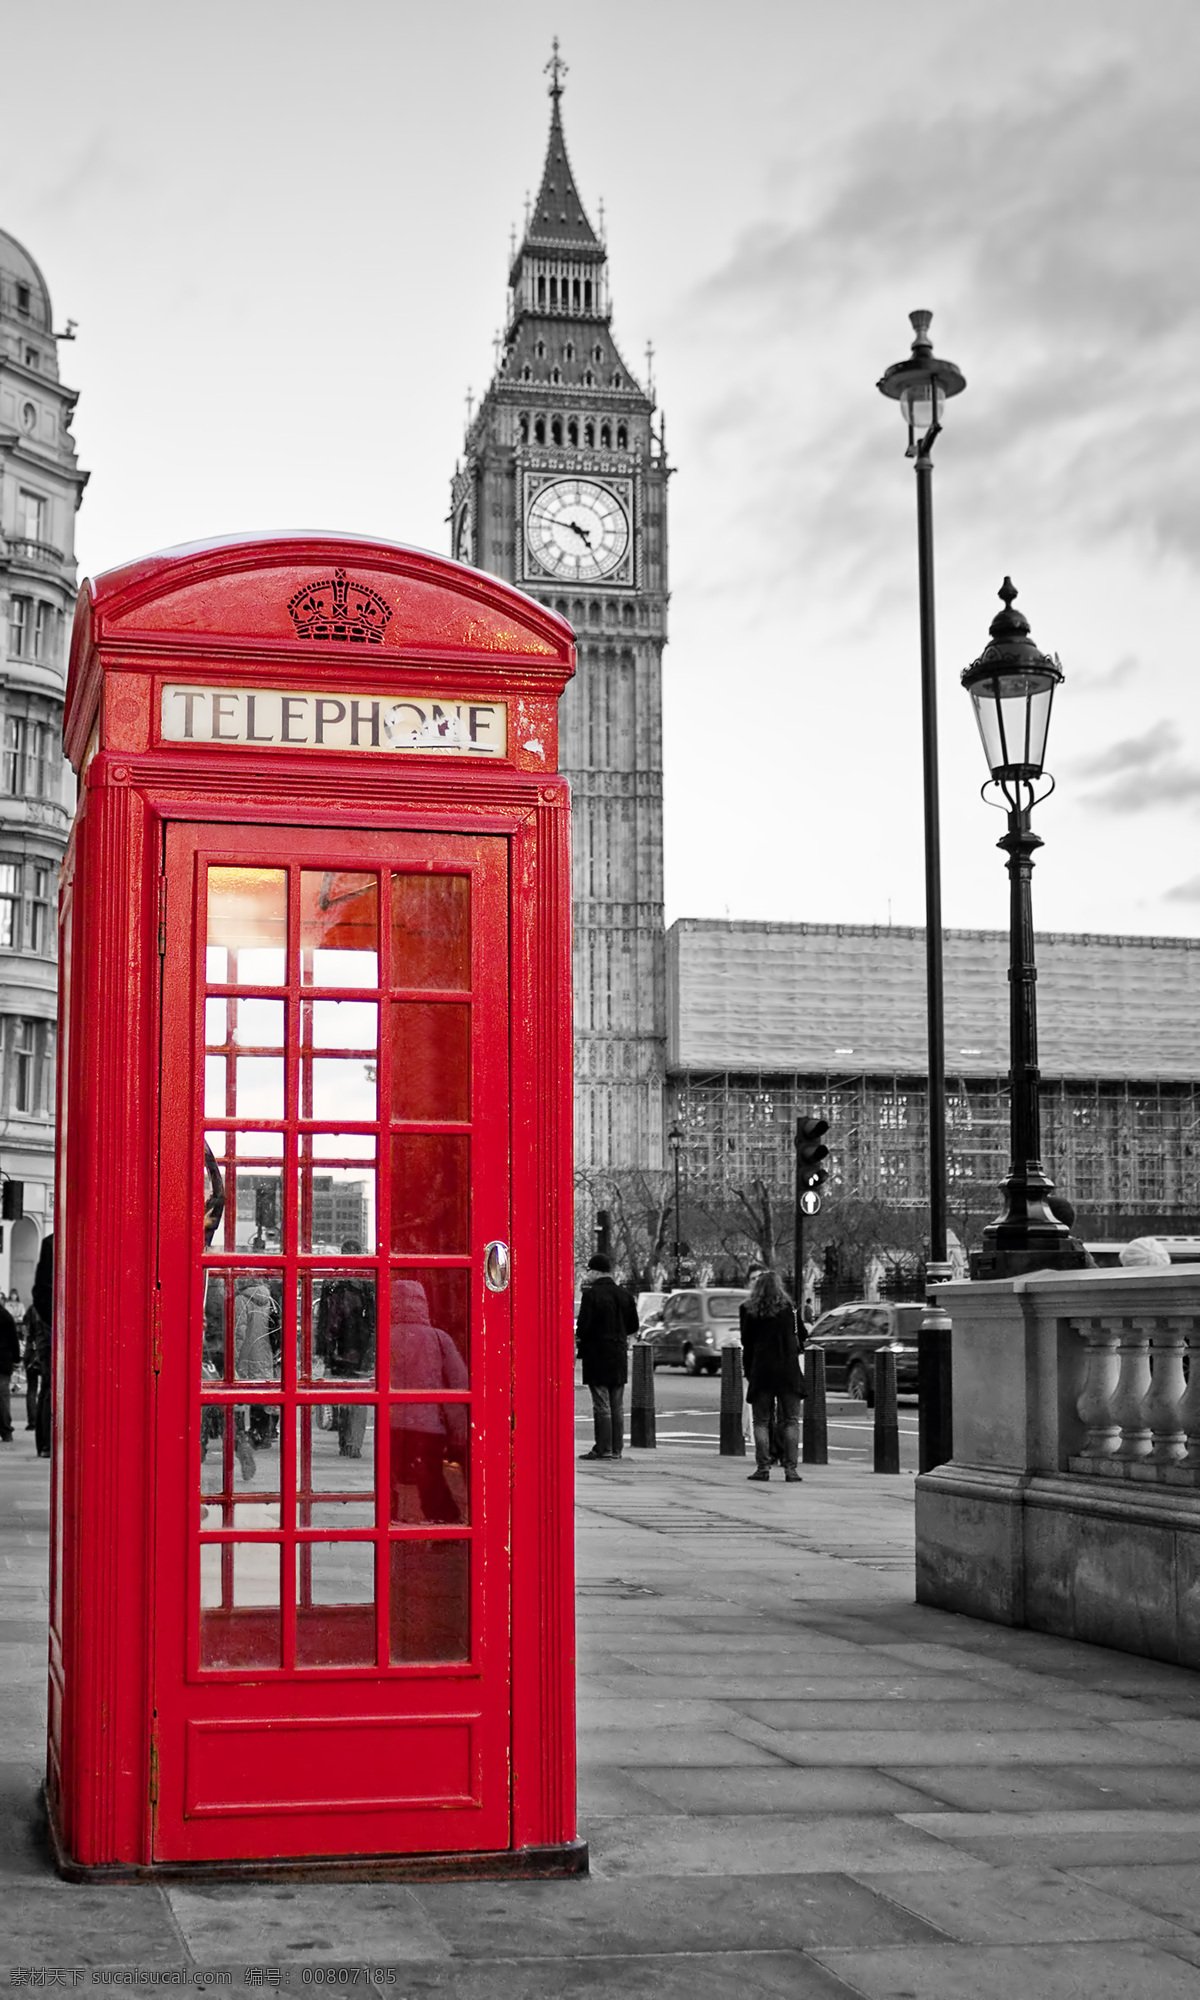 电话亭与钟楼 伦敦街道 伦敦风景 欧美风格 英国风景 名胜古迹 外国风景 旅游图片 钟楼 电话亭 自然景观 白色